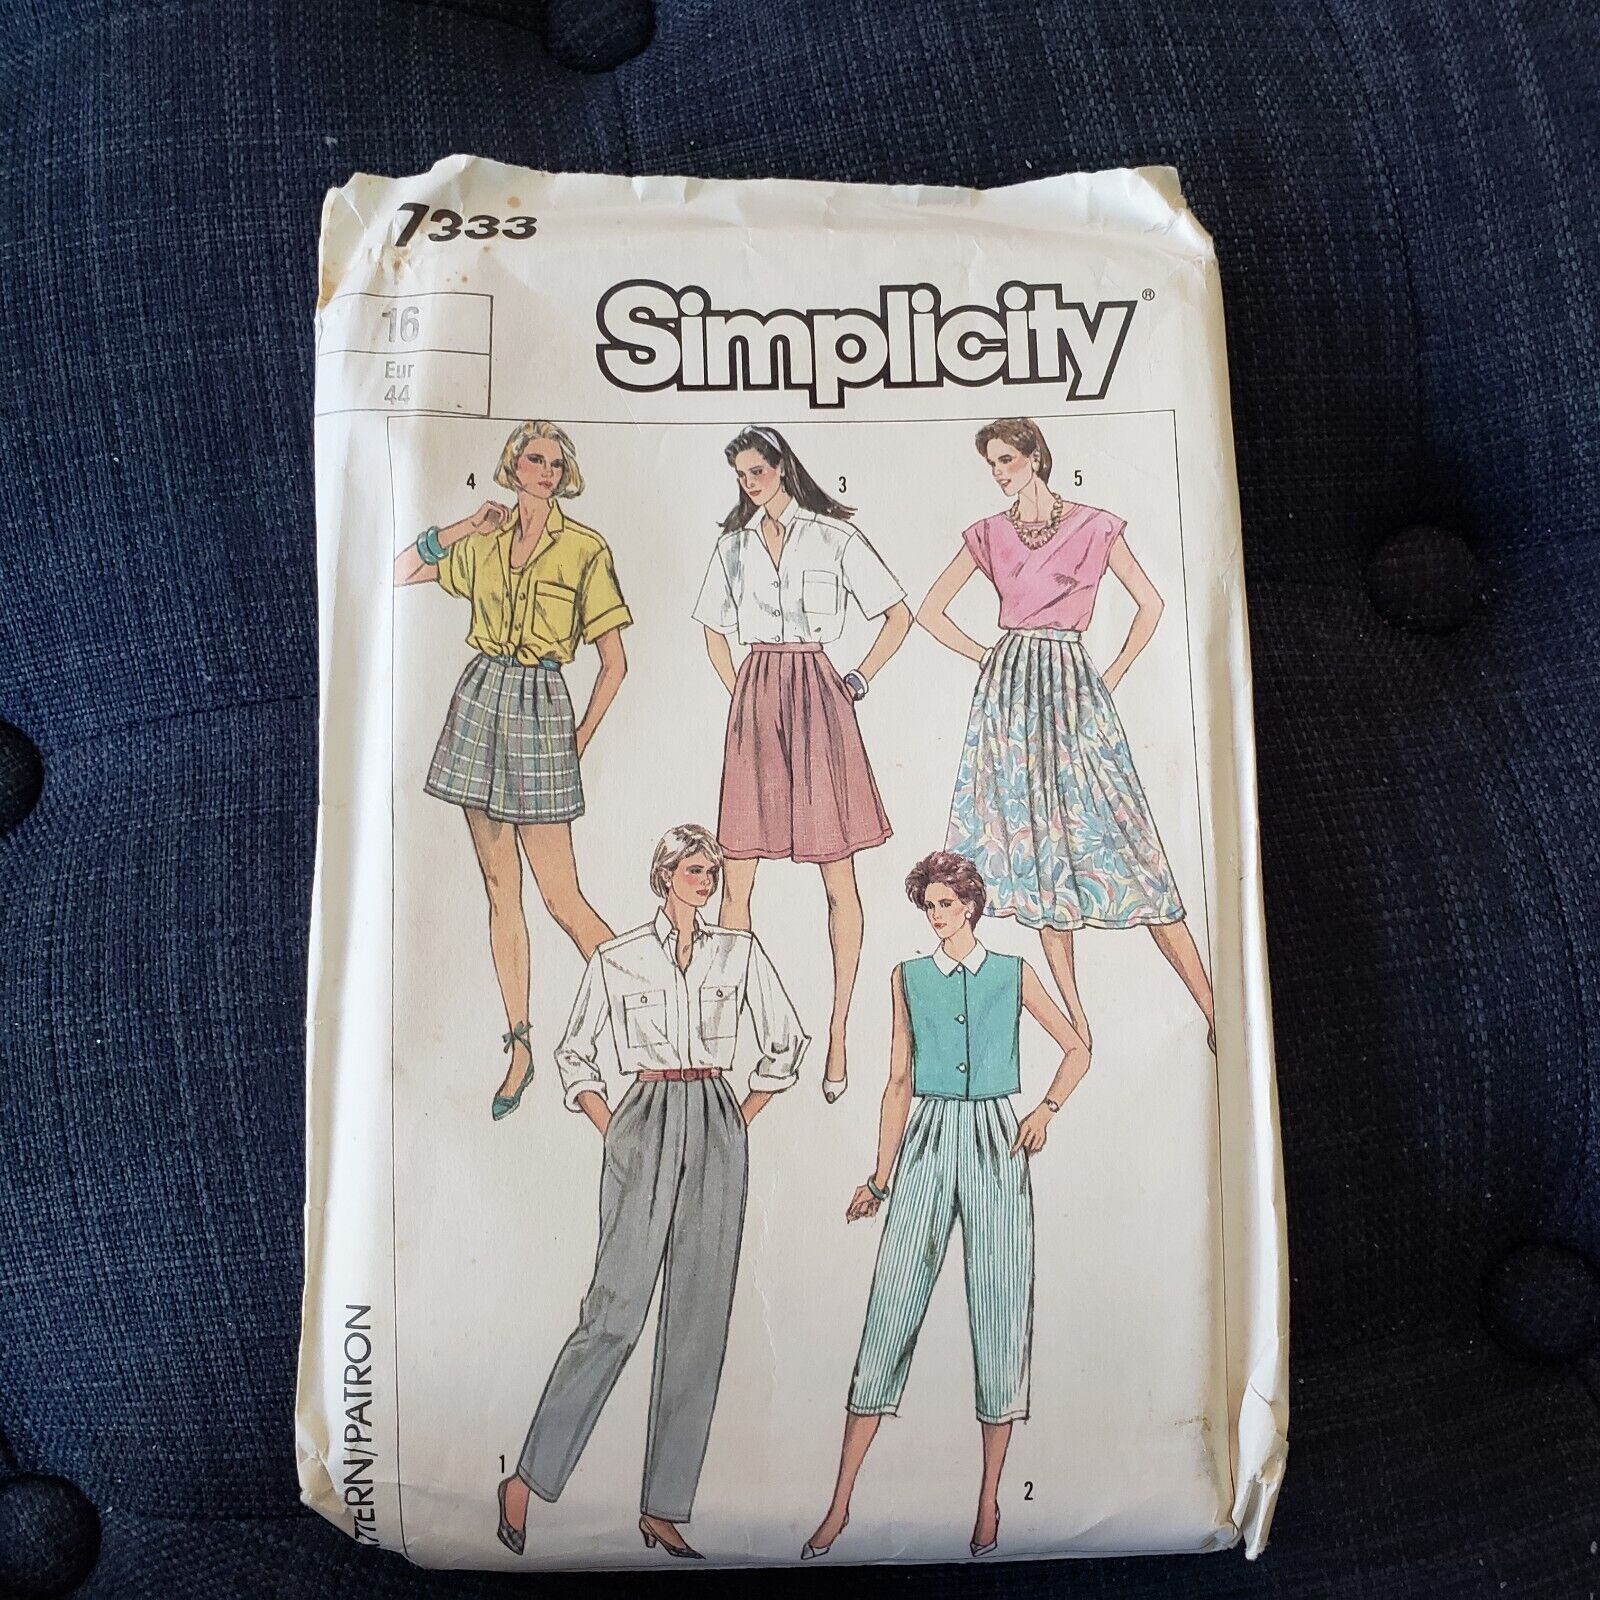 VTG Simplicity 7333 Pants, Skirt, Culottes Pattern Sz 16 UNCUT